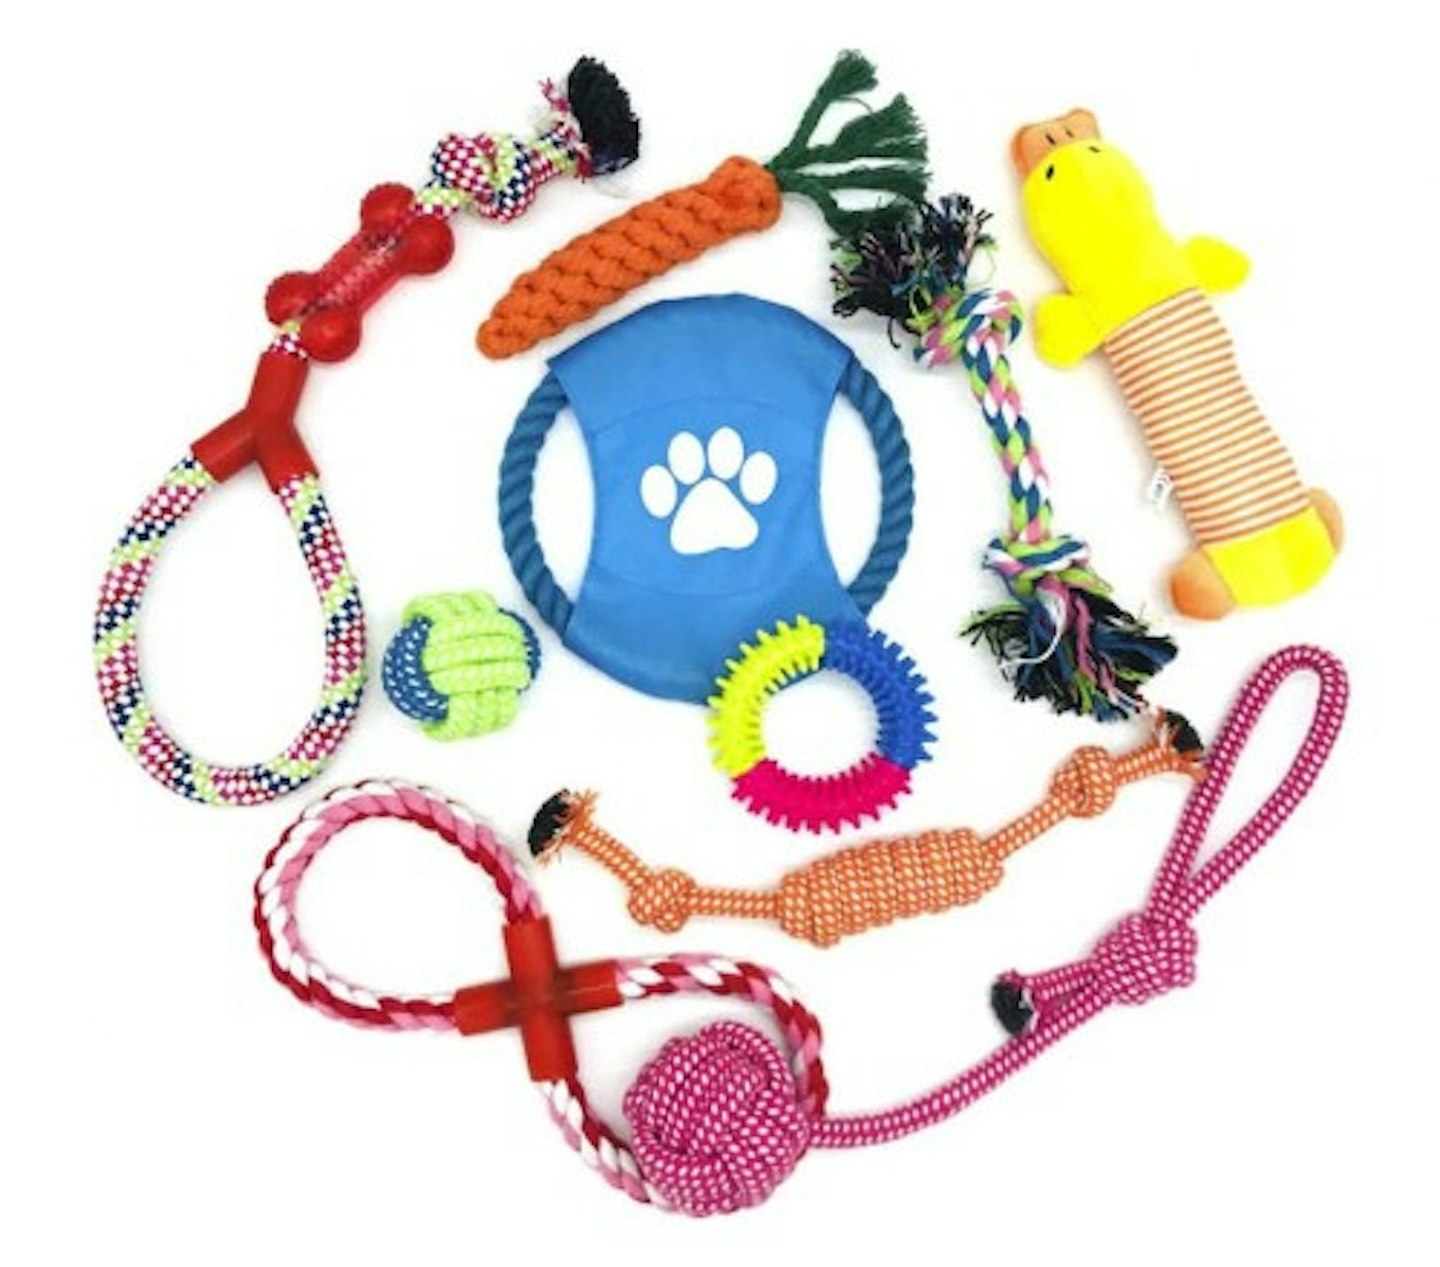  WeFine Puppy Dog Chew Toys Teething Training, 10pcs